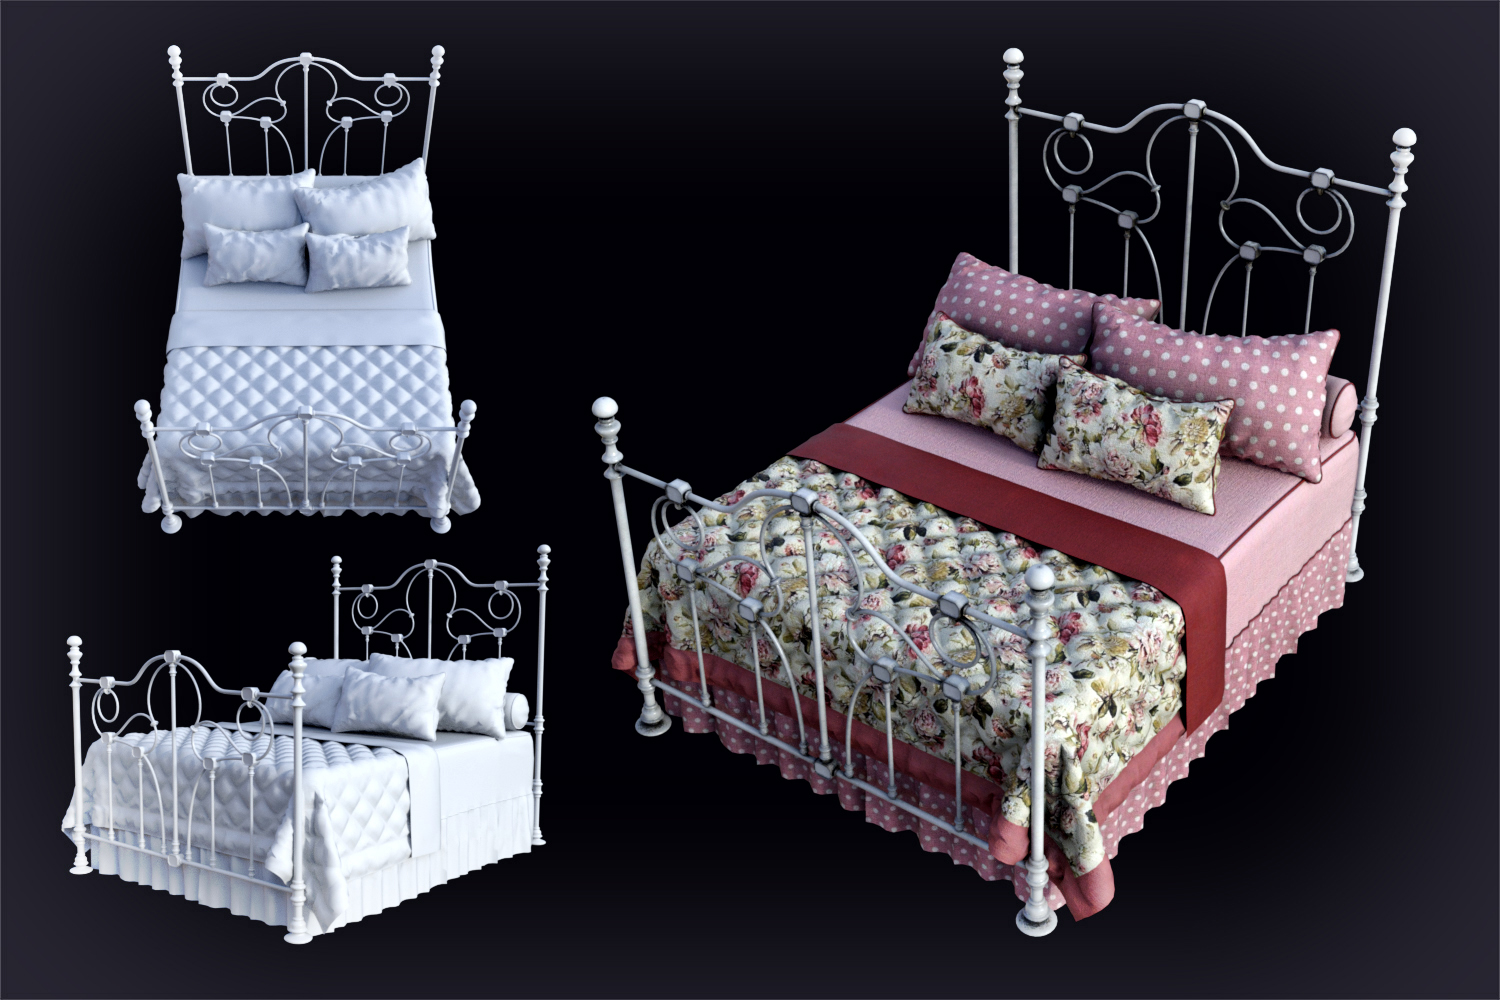 DGV Antique Beds by: DG Vertex, 3D Models by Daz 3D